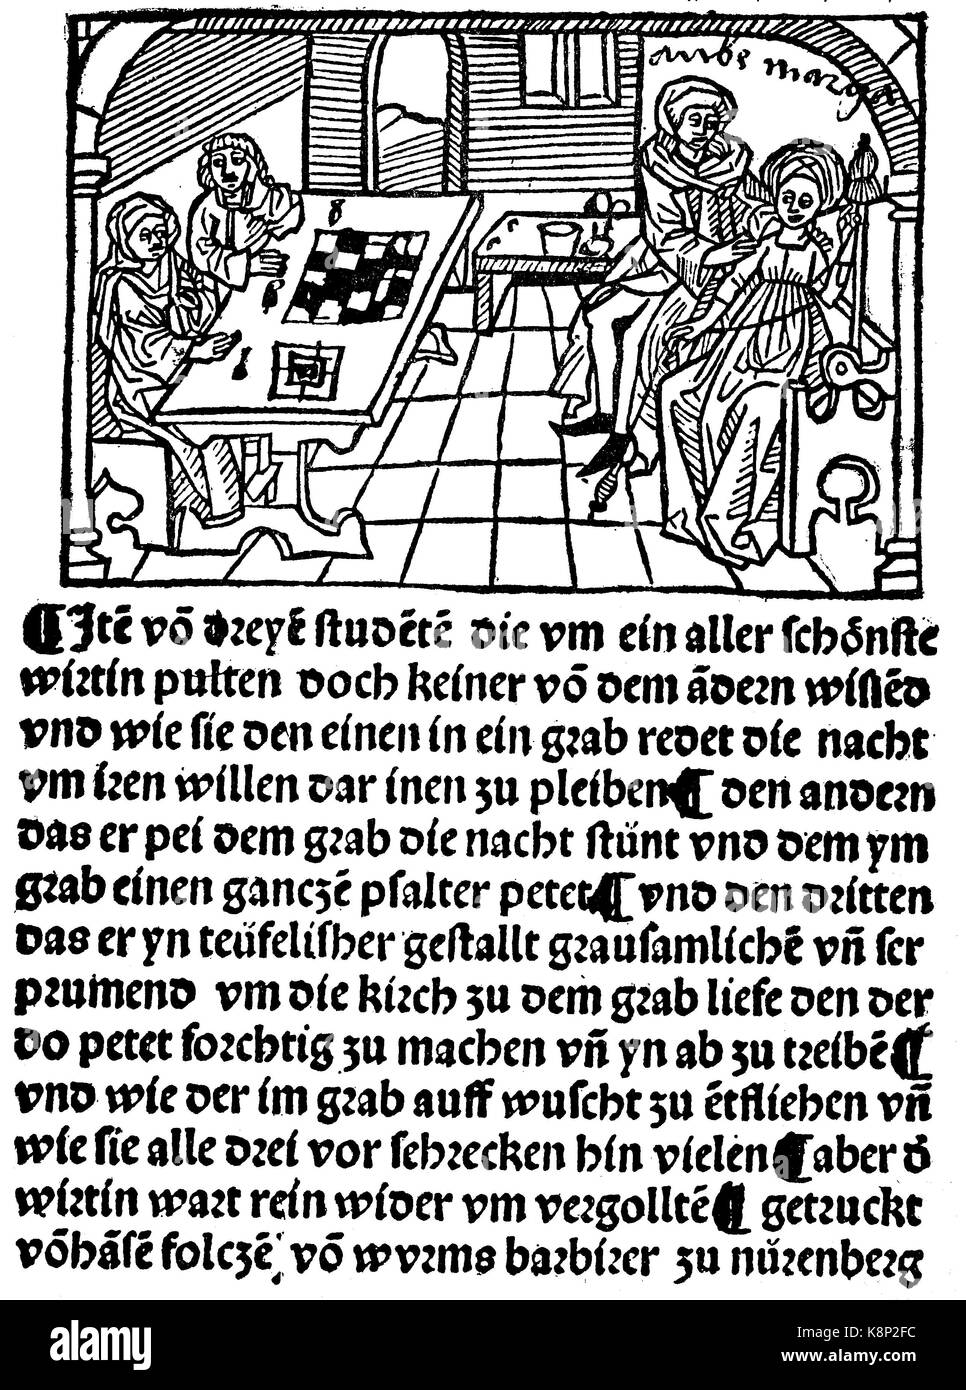 Les étudiants de l'un aime l'aventure, un Liebesabenteuer Studenten, Titel von Schwanks von Hans Folz, 1480, l'amélioration numérique reproduction d'une gravure sur bois, publié dans le 19e siècle Banque D'Images